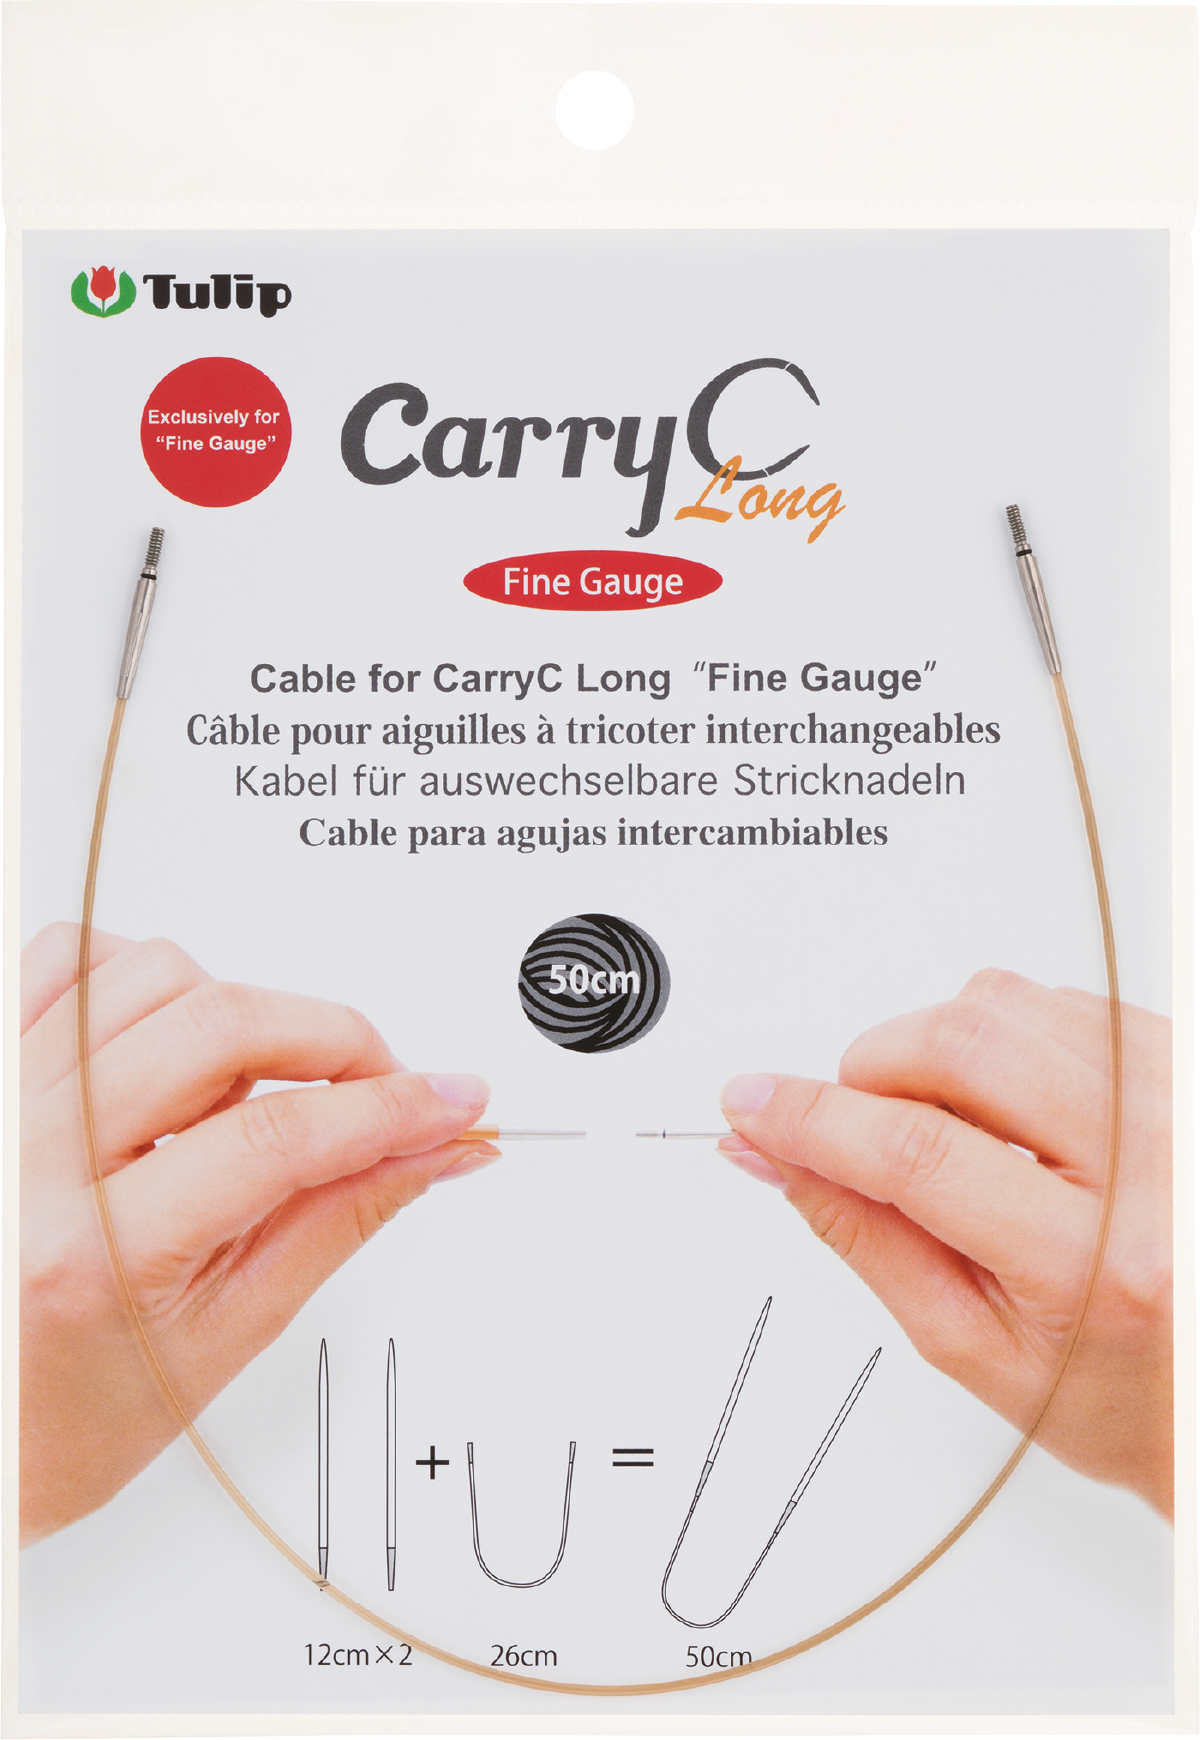 tulip cable para carryC Largo “calibre fino”